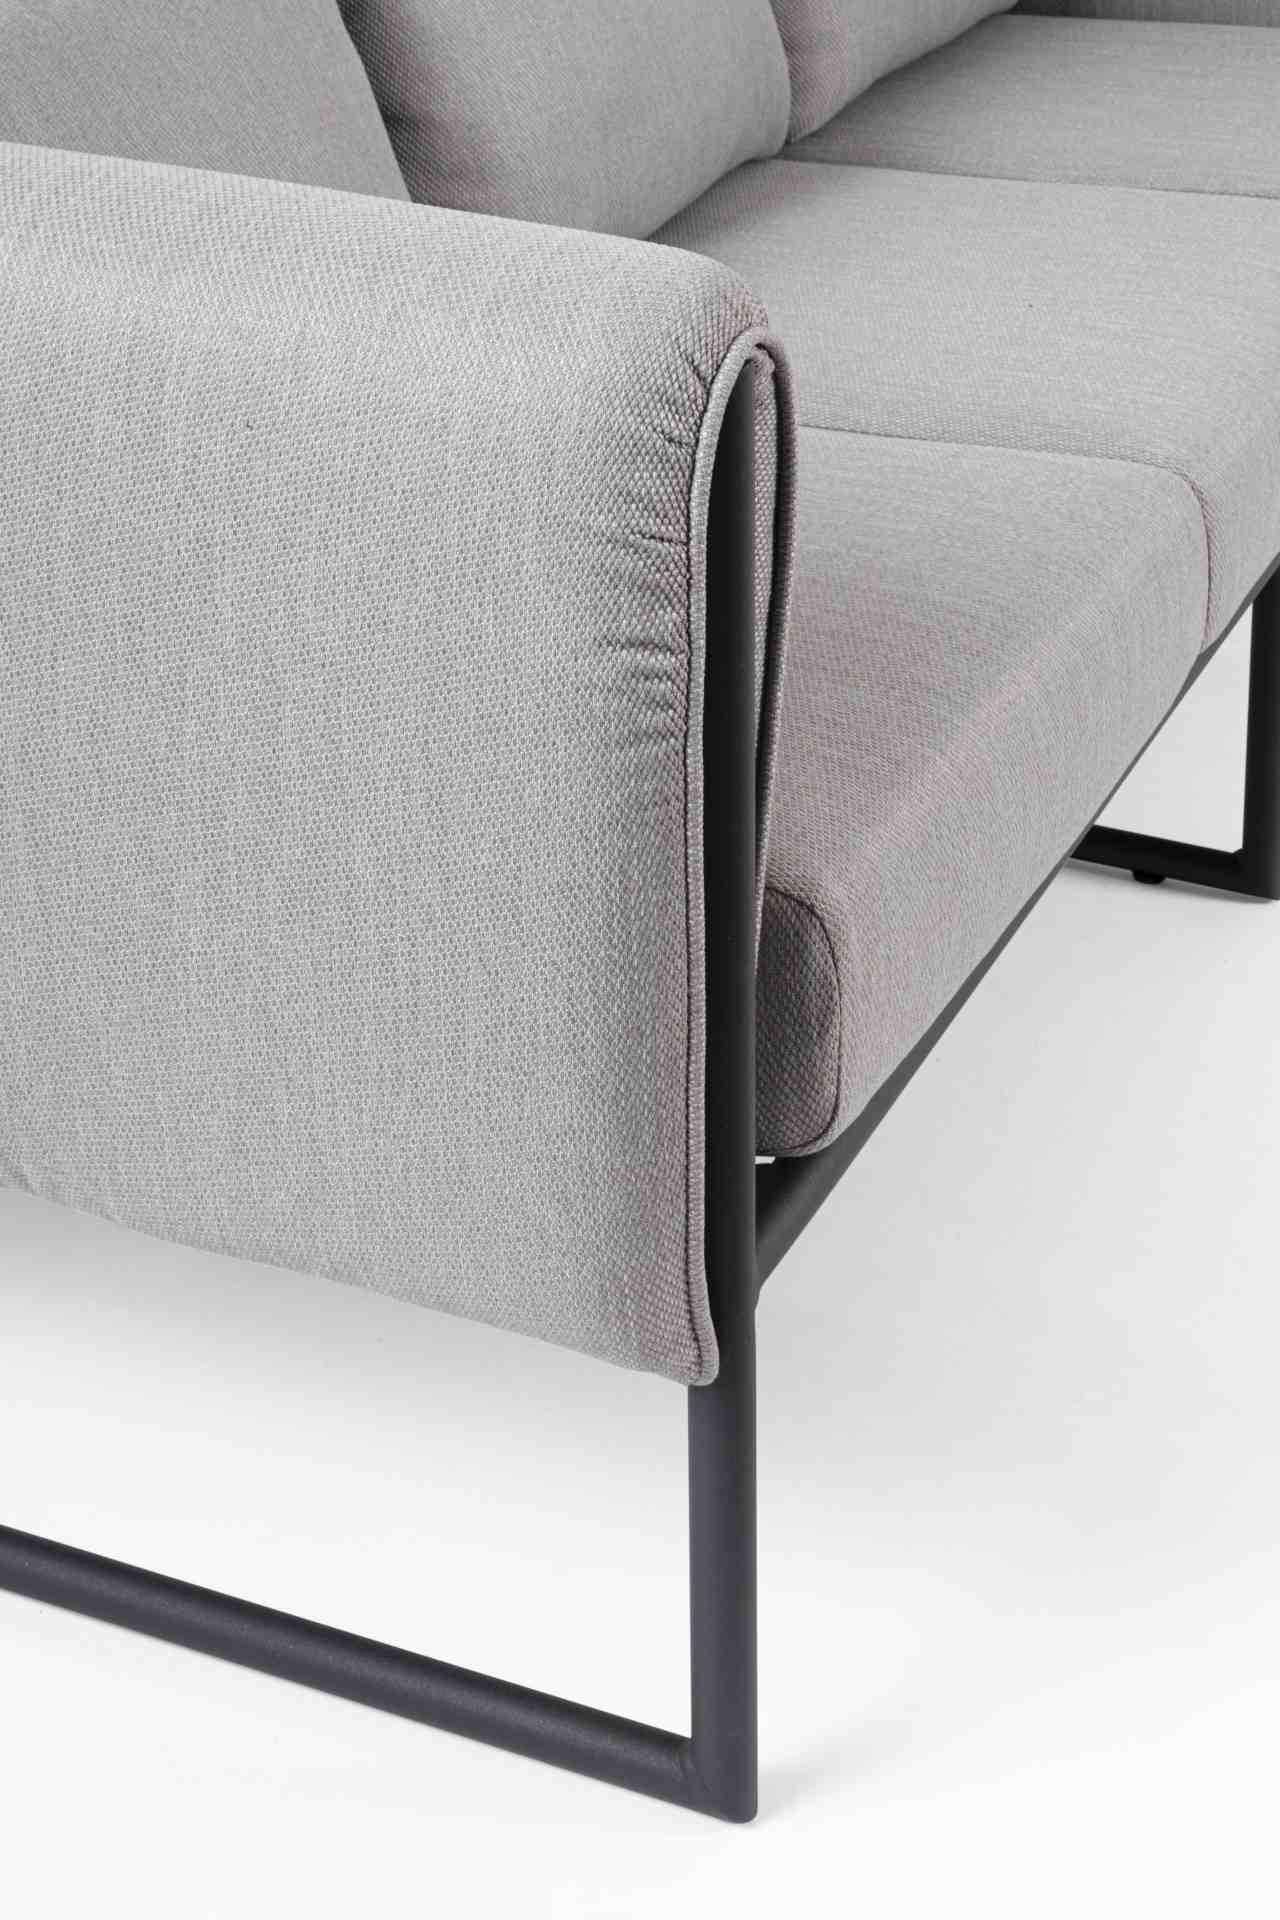 Das Gartensofa Pixel überzeugt mit seinem modernen Design. Gefertigt wurde es aus Olefin-Stoff, welcher einen grauen Farbton besitzt. Das Gestell ist aus Aluminium und hat eine schwarze Farbe. Das Sofa verfügt über eine Sitzhöhe von 42 cm und ist für den 